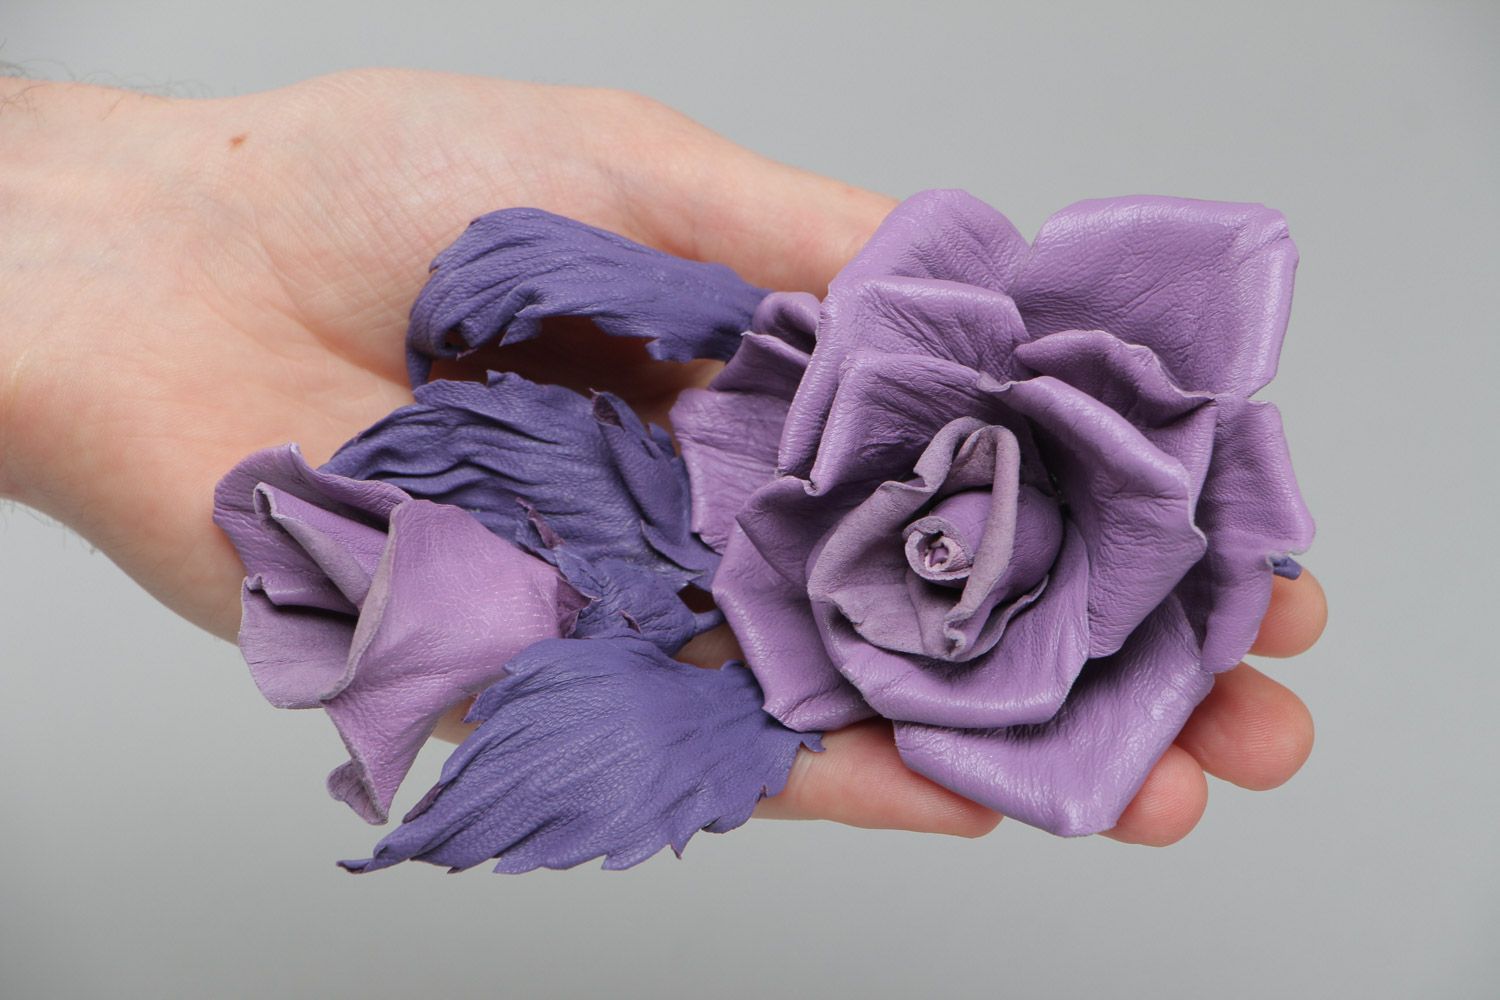 Брошь из кожи в виде бутонов розы крупная сиреневая необычная ручной работы фото 4